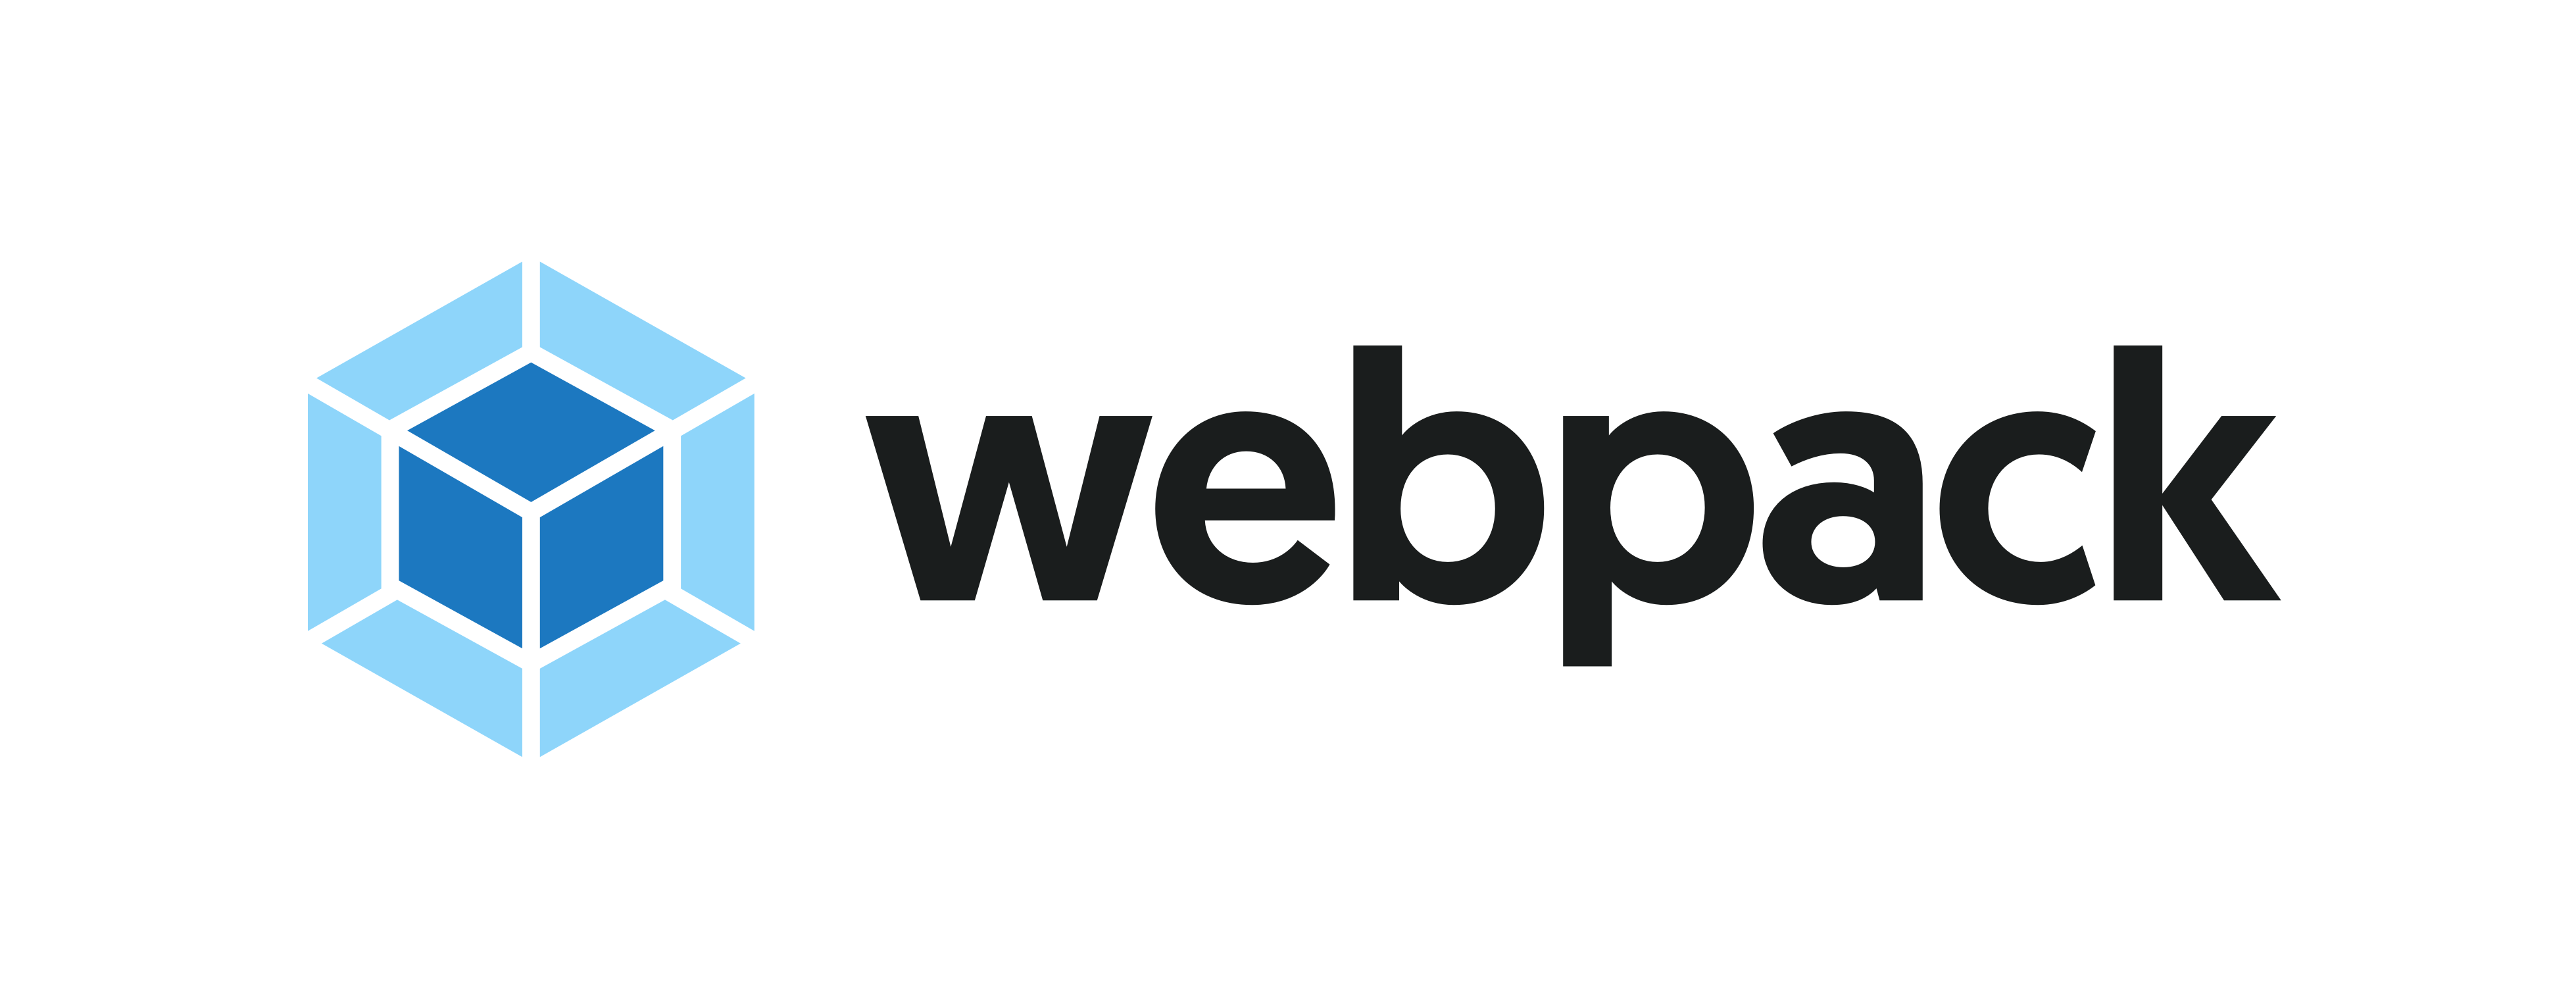 webpack logo default with proper spacing on light background